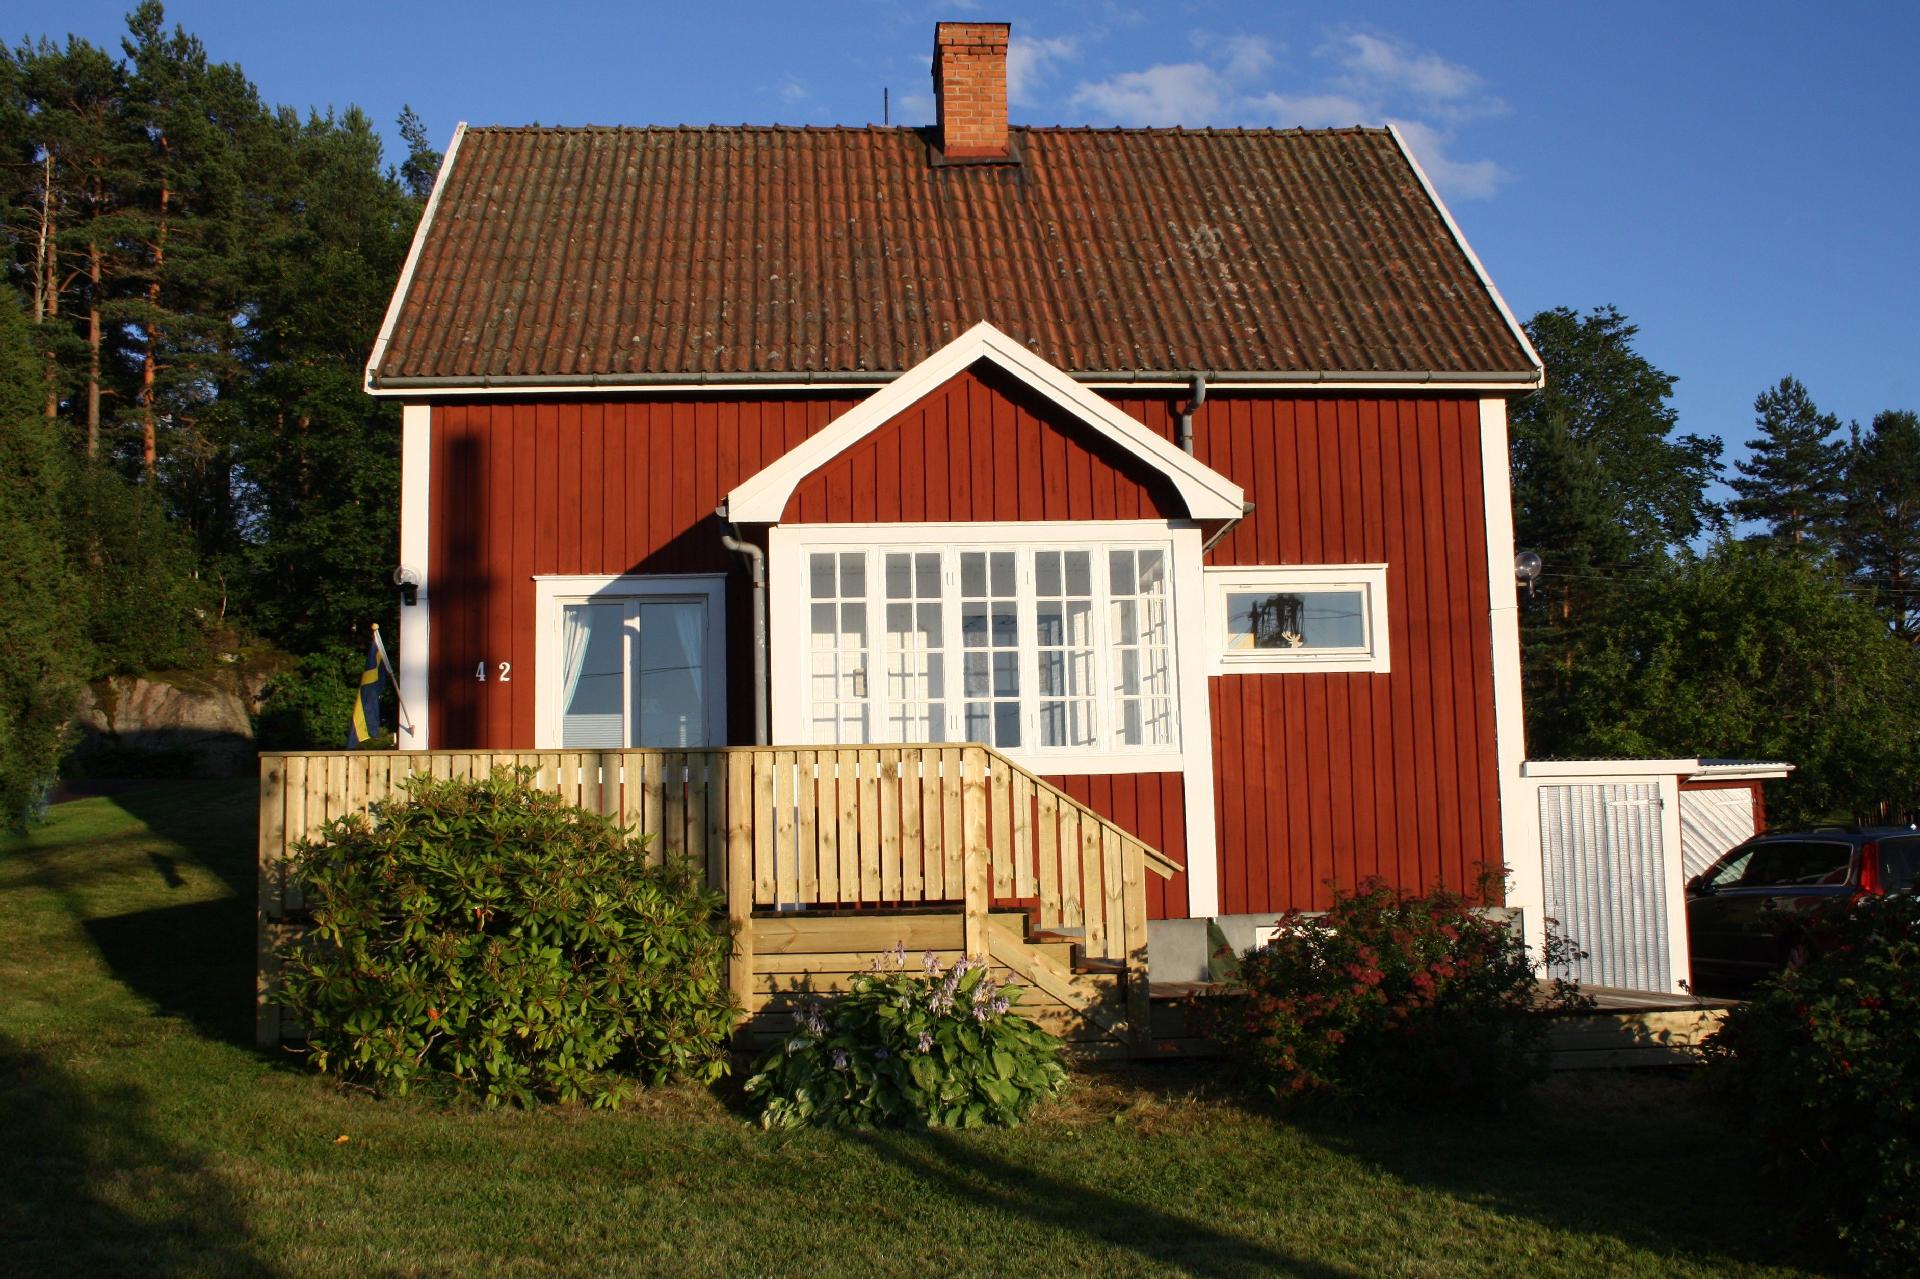 Ferienhaus in Storfors mit Großem Garten Ferienhaus in Schweden